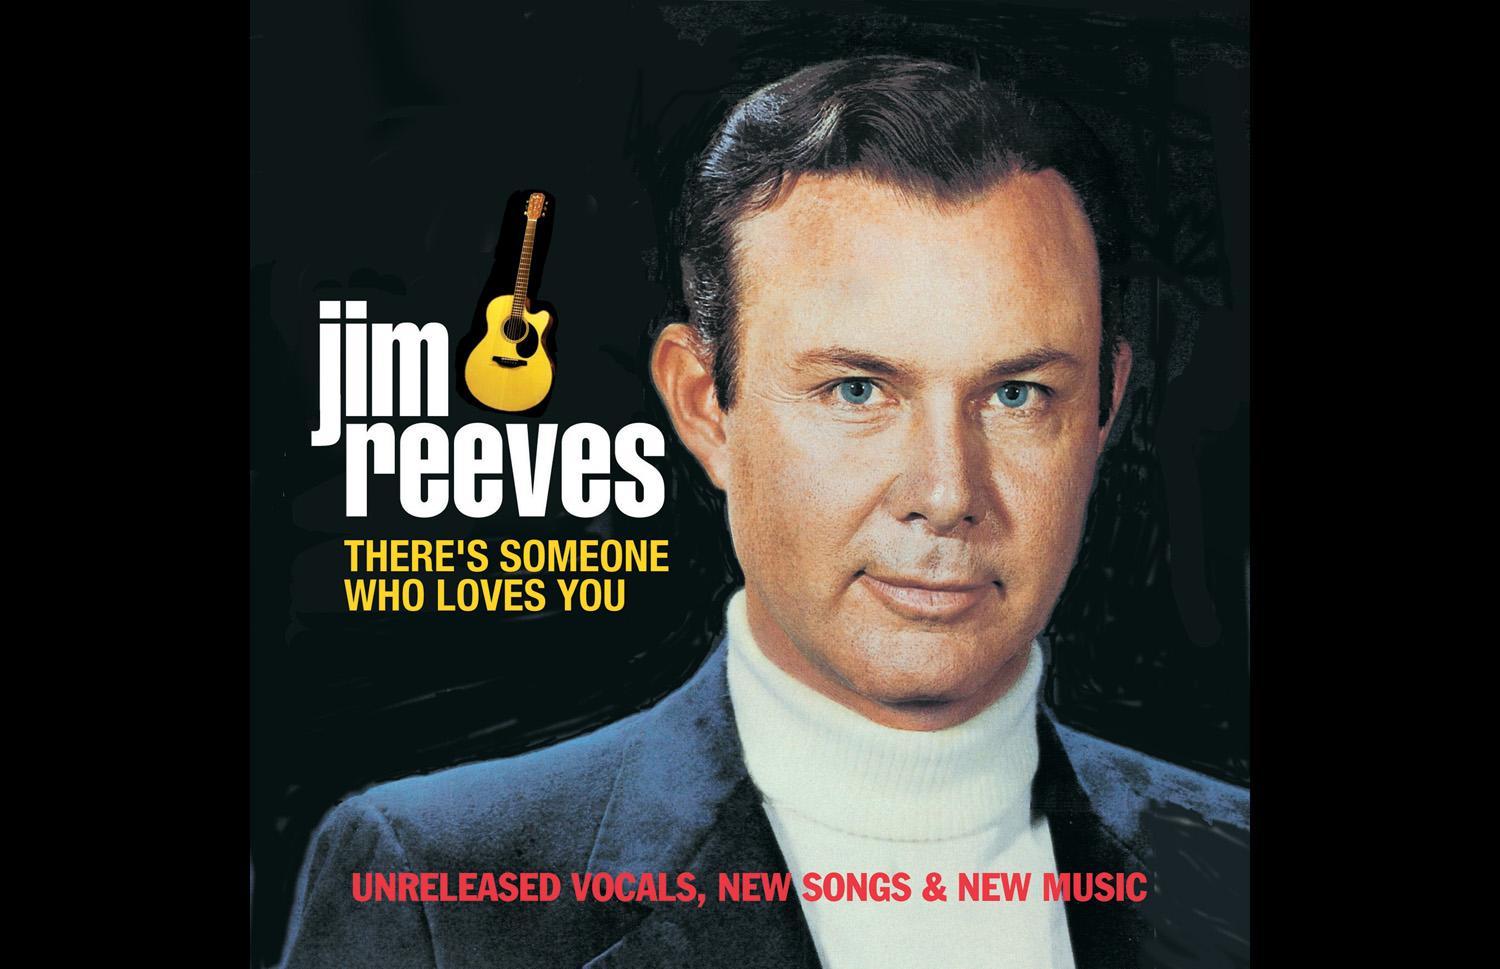 Singer Jim Reeves - American Profile